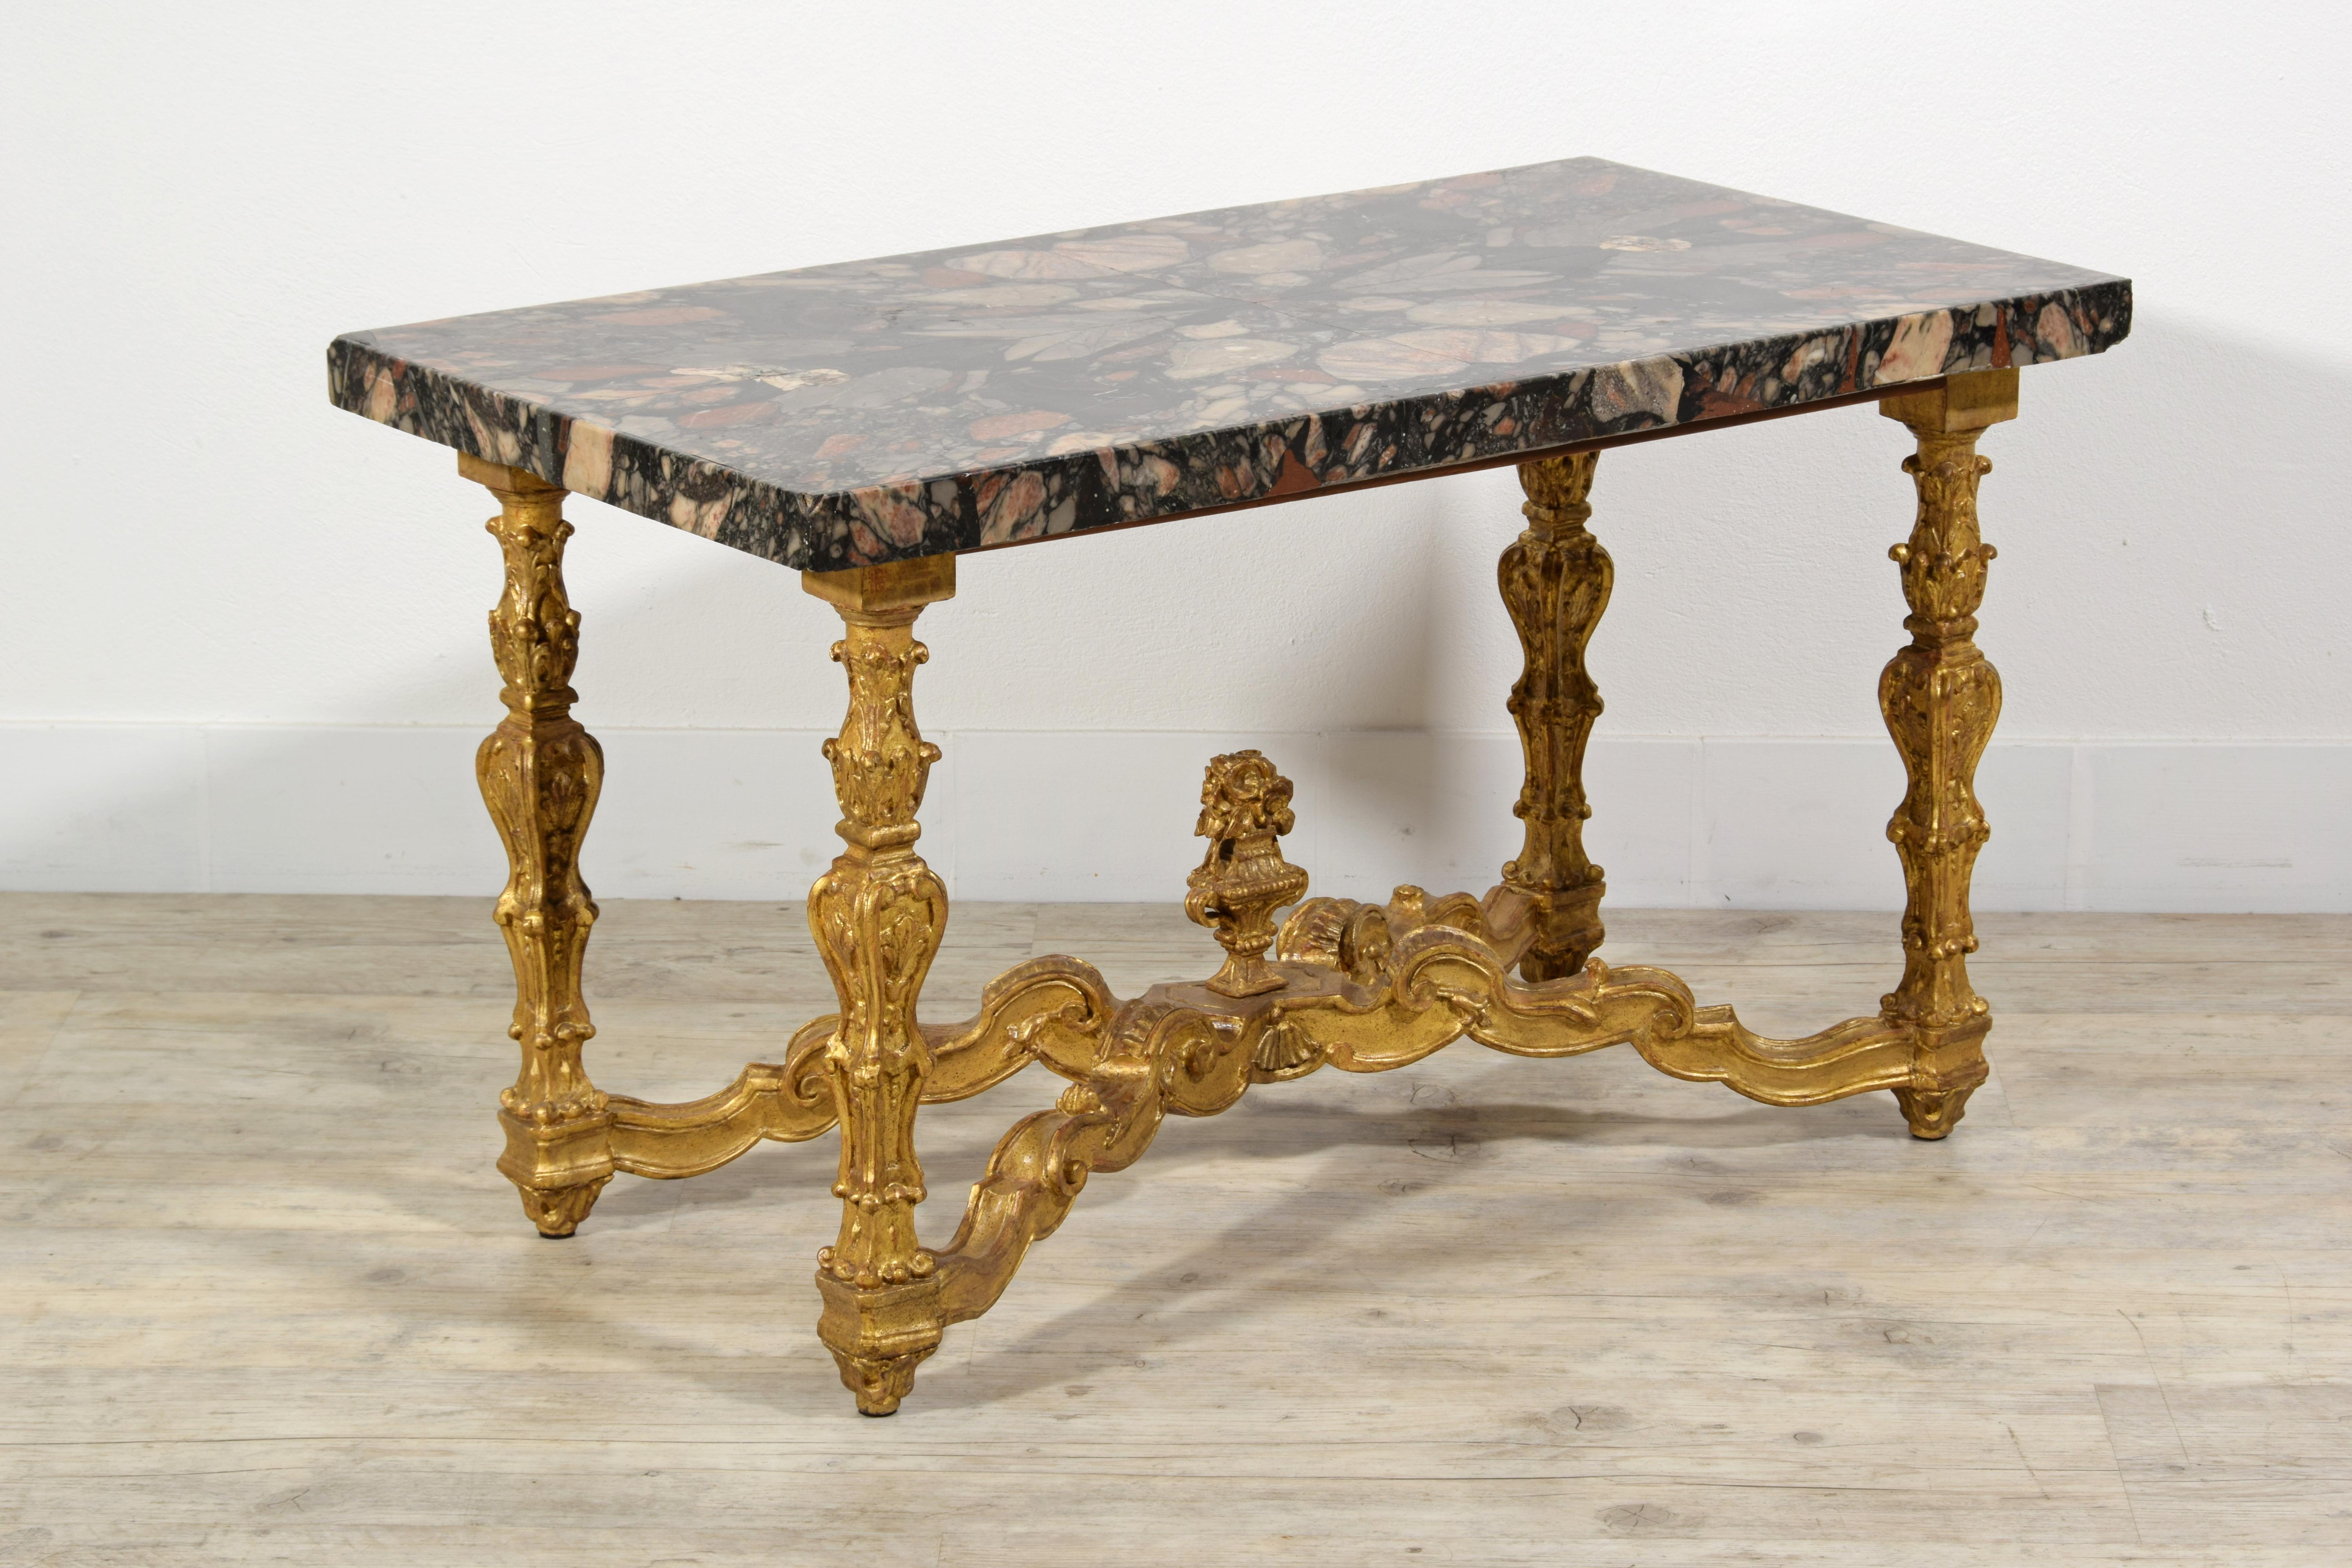 Table basse italienne avec plateau en marbre du XVIIIe siècle et base en bois doré sculpté.
Dimensions : cm L 91 x P 49 x H 52, épaisseur du dessus 4 cm.
Cette table basse, du centre, a été fabriquée en Italie, avec l'utilisation de matériaux